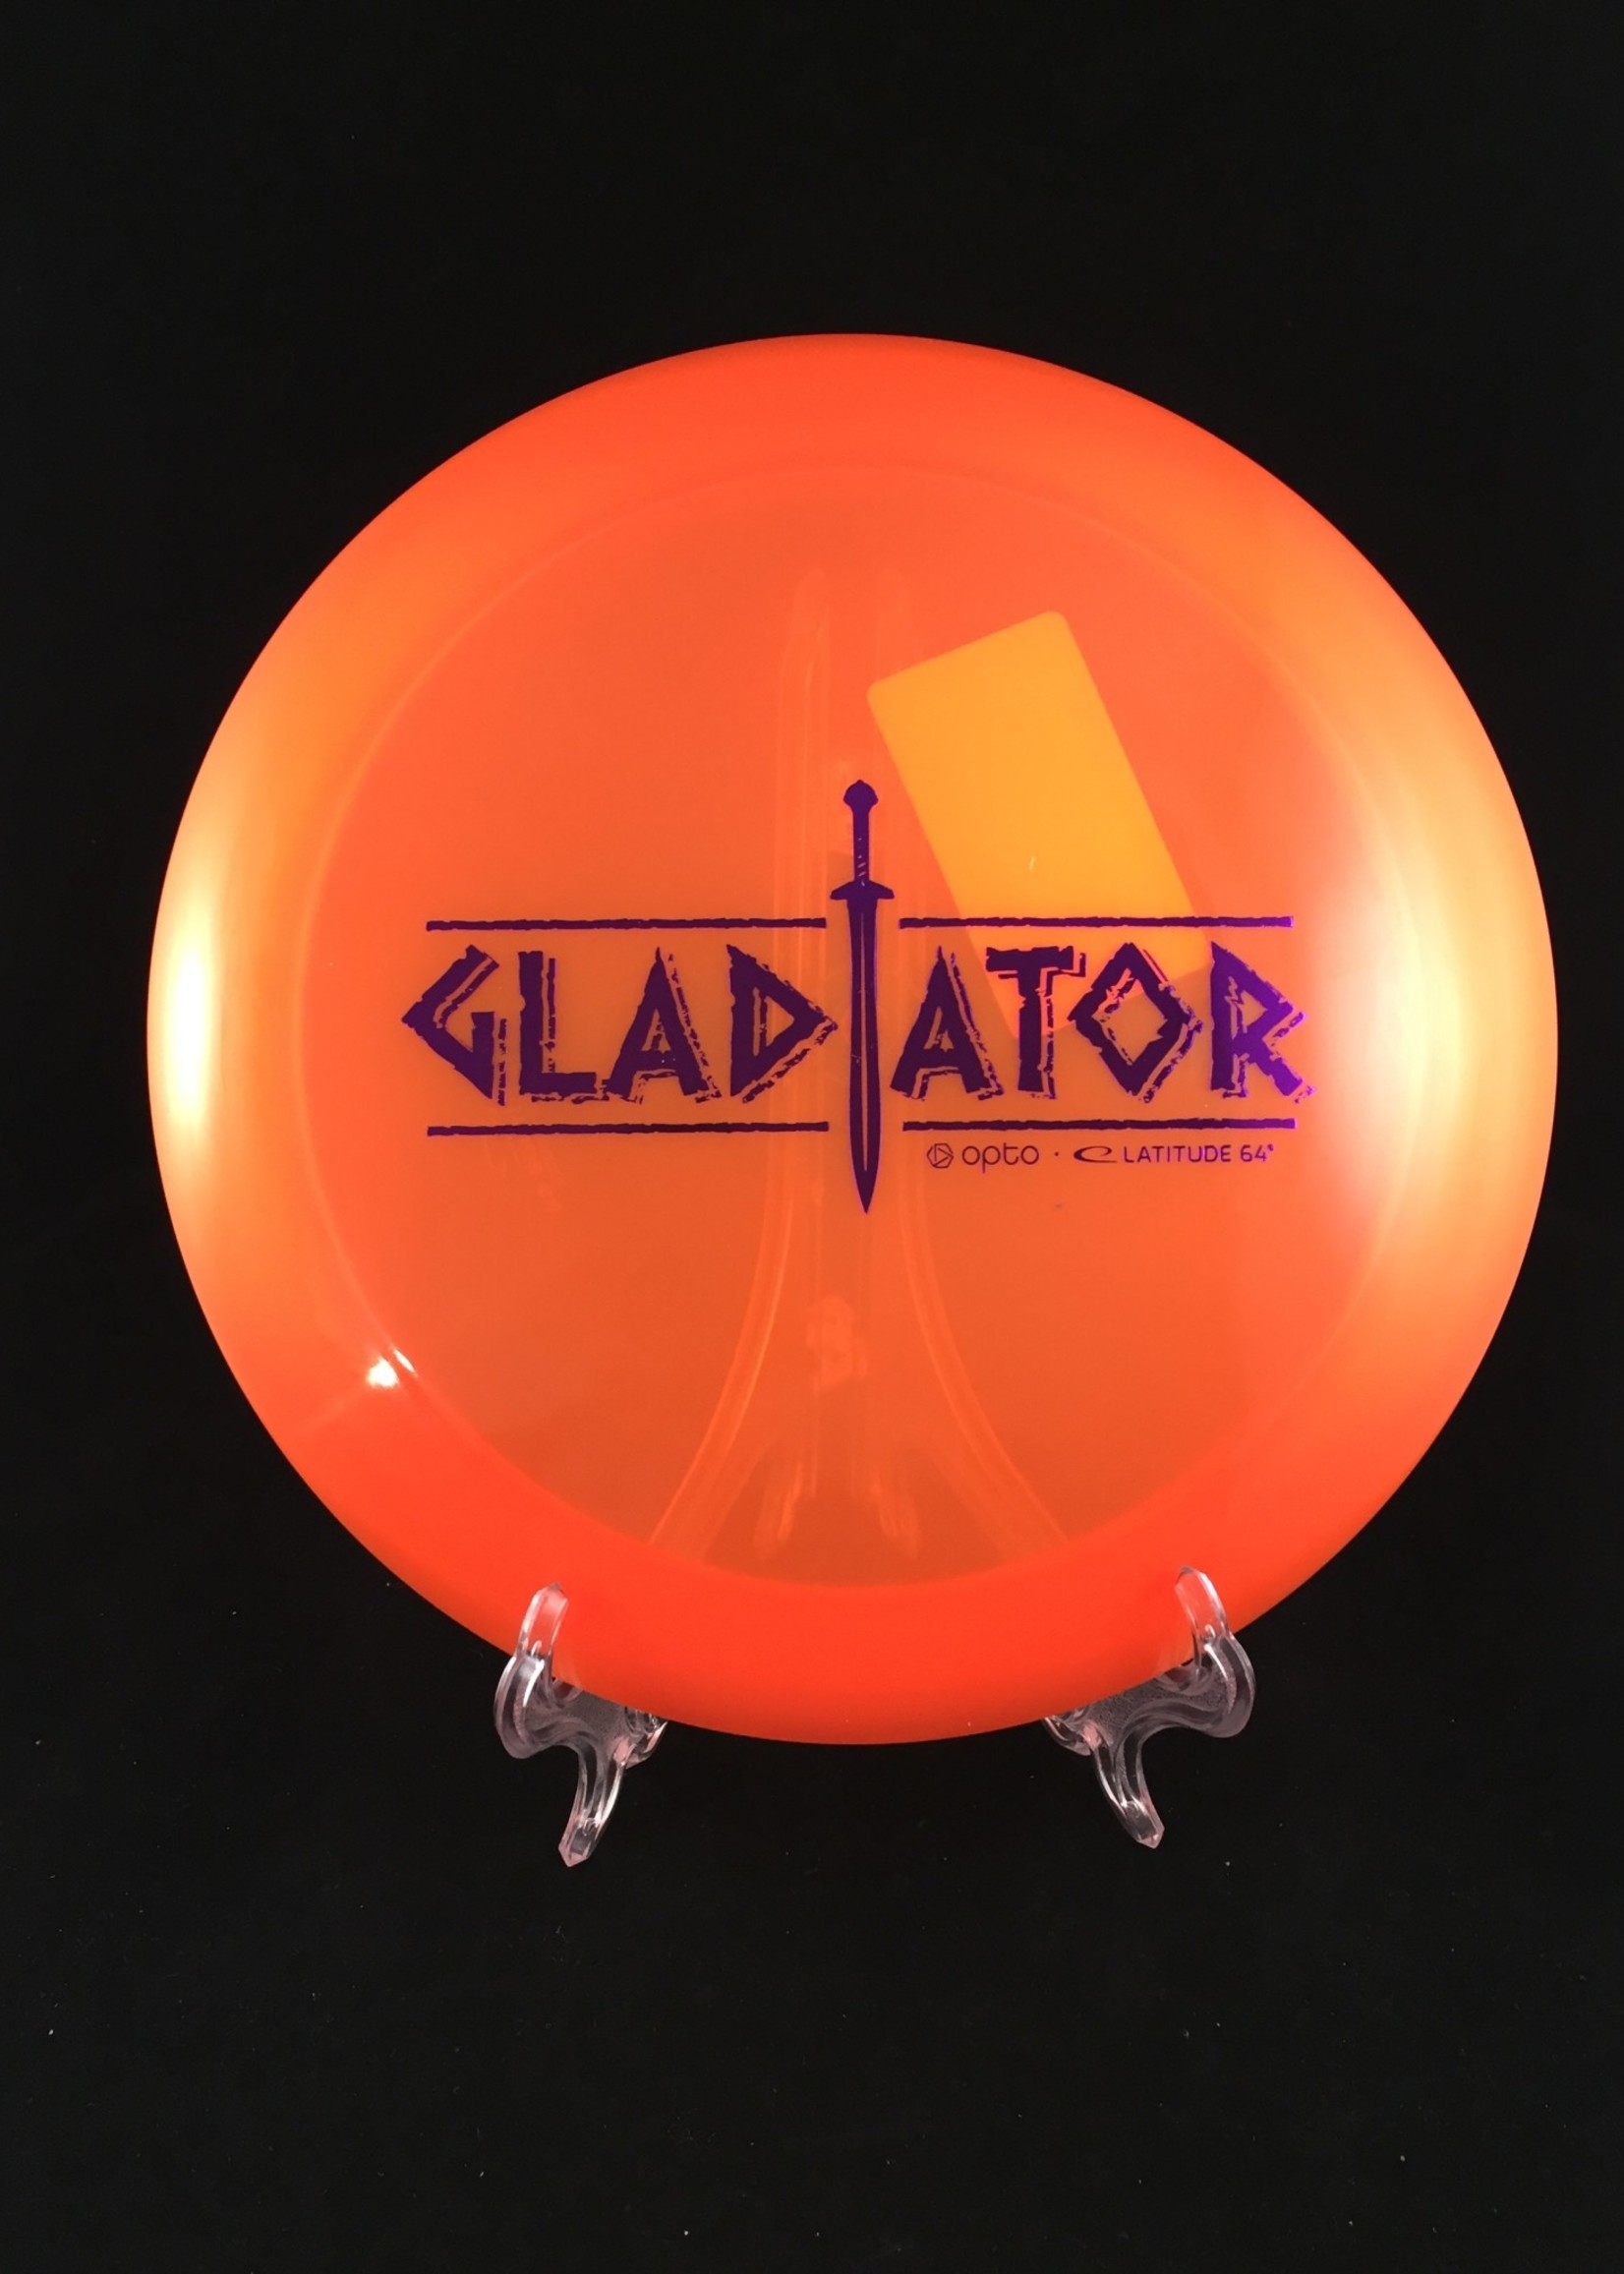 Lattitude 64 Opto Gladiator